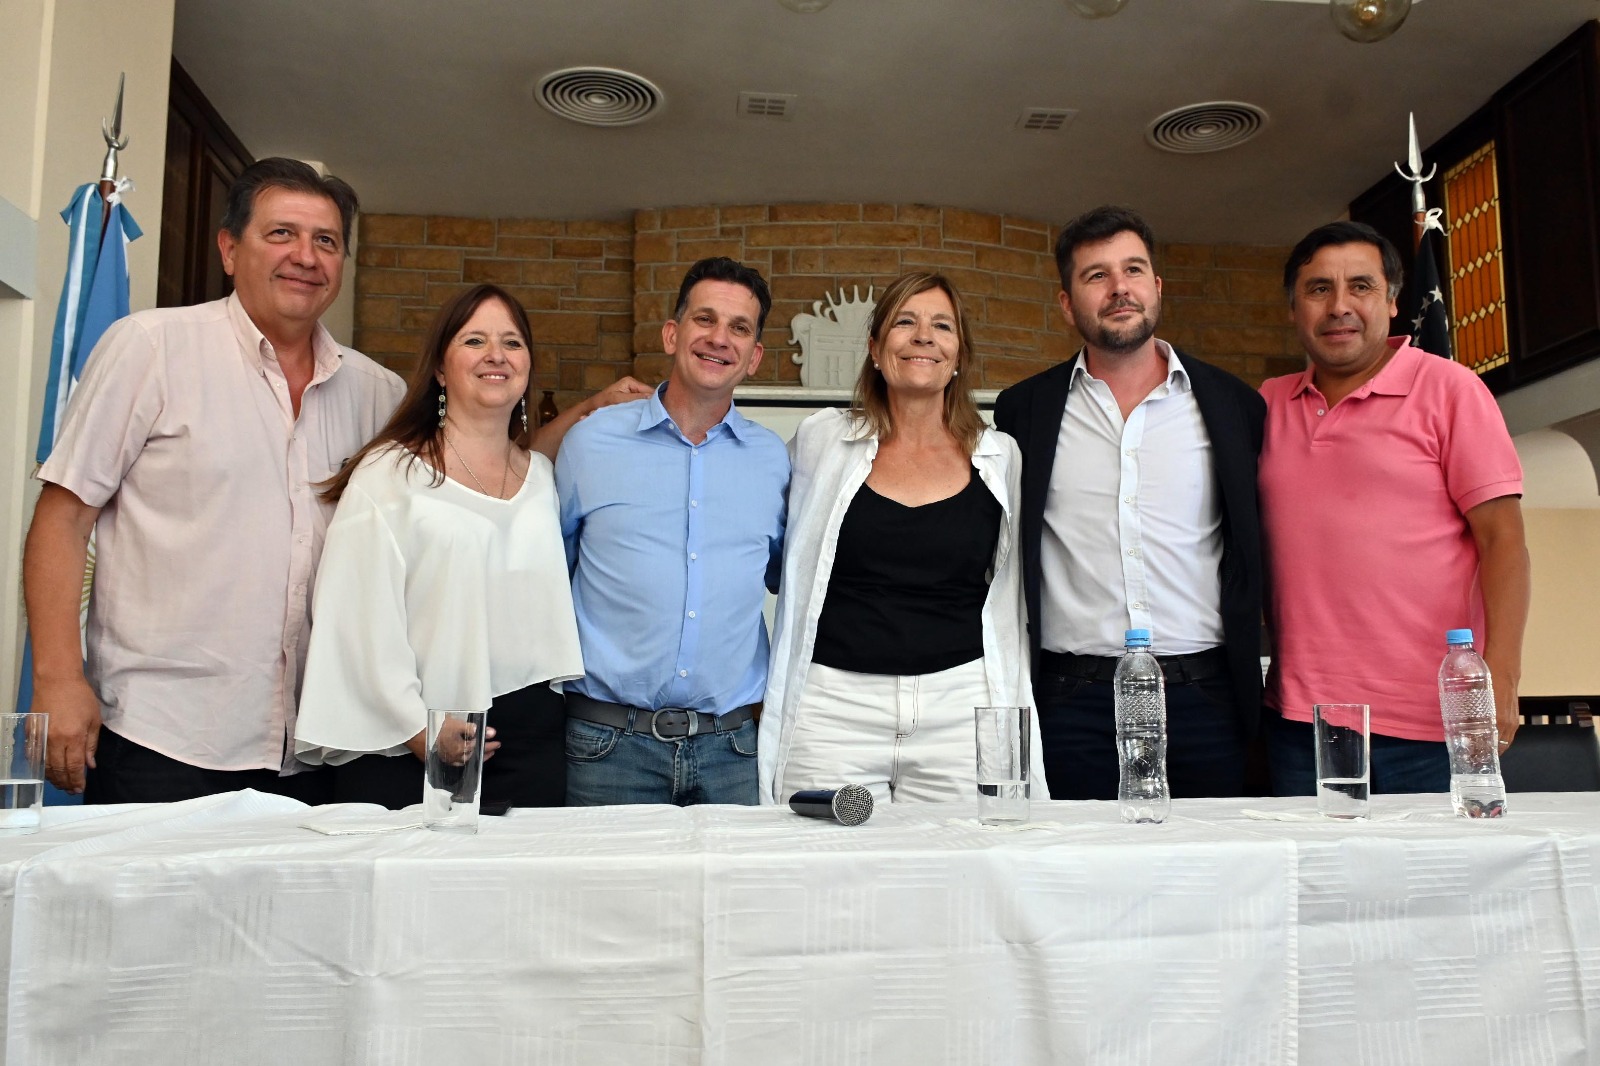 Rajneri, Odarda, Costa Brutten, Horne, Berros y Arce en la presentación en Viedma. Foto: Marcelo Ochoa